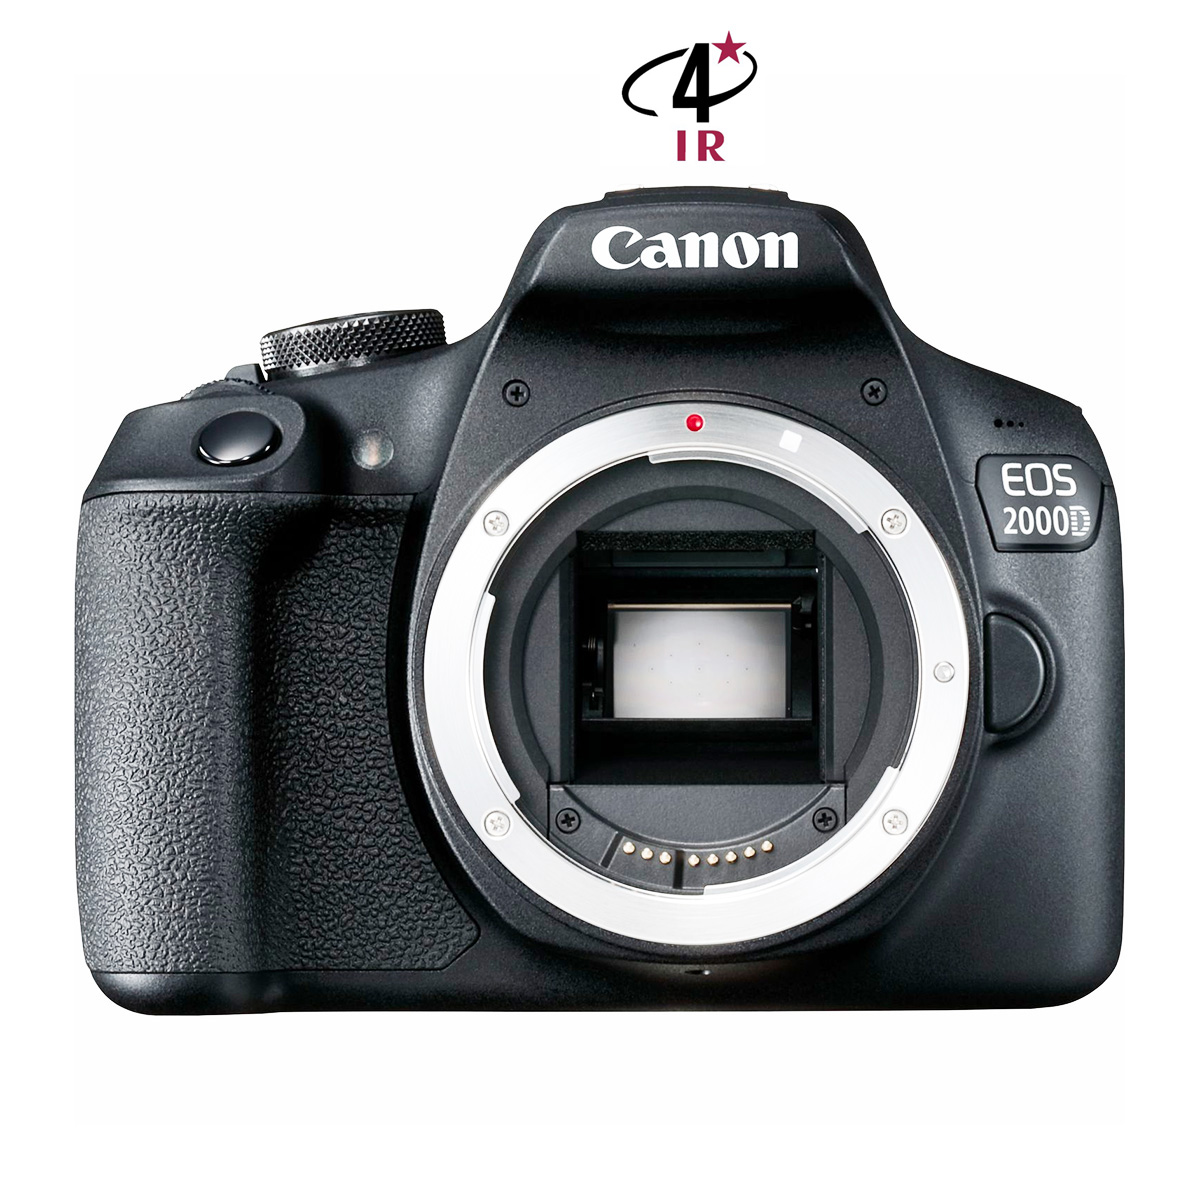 Reflex Canon EOS 2000D neuf défiltré + refiltré 4'IR New 4'IR Cameras